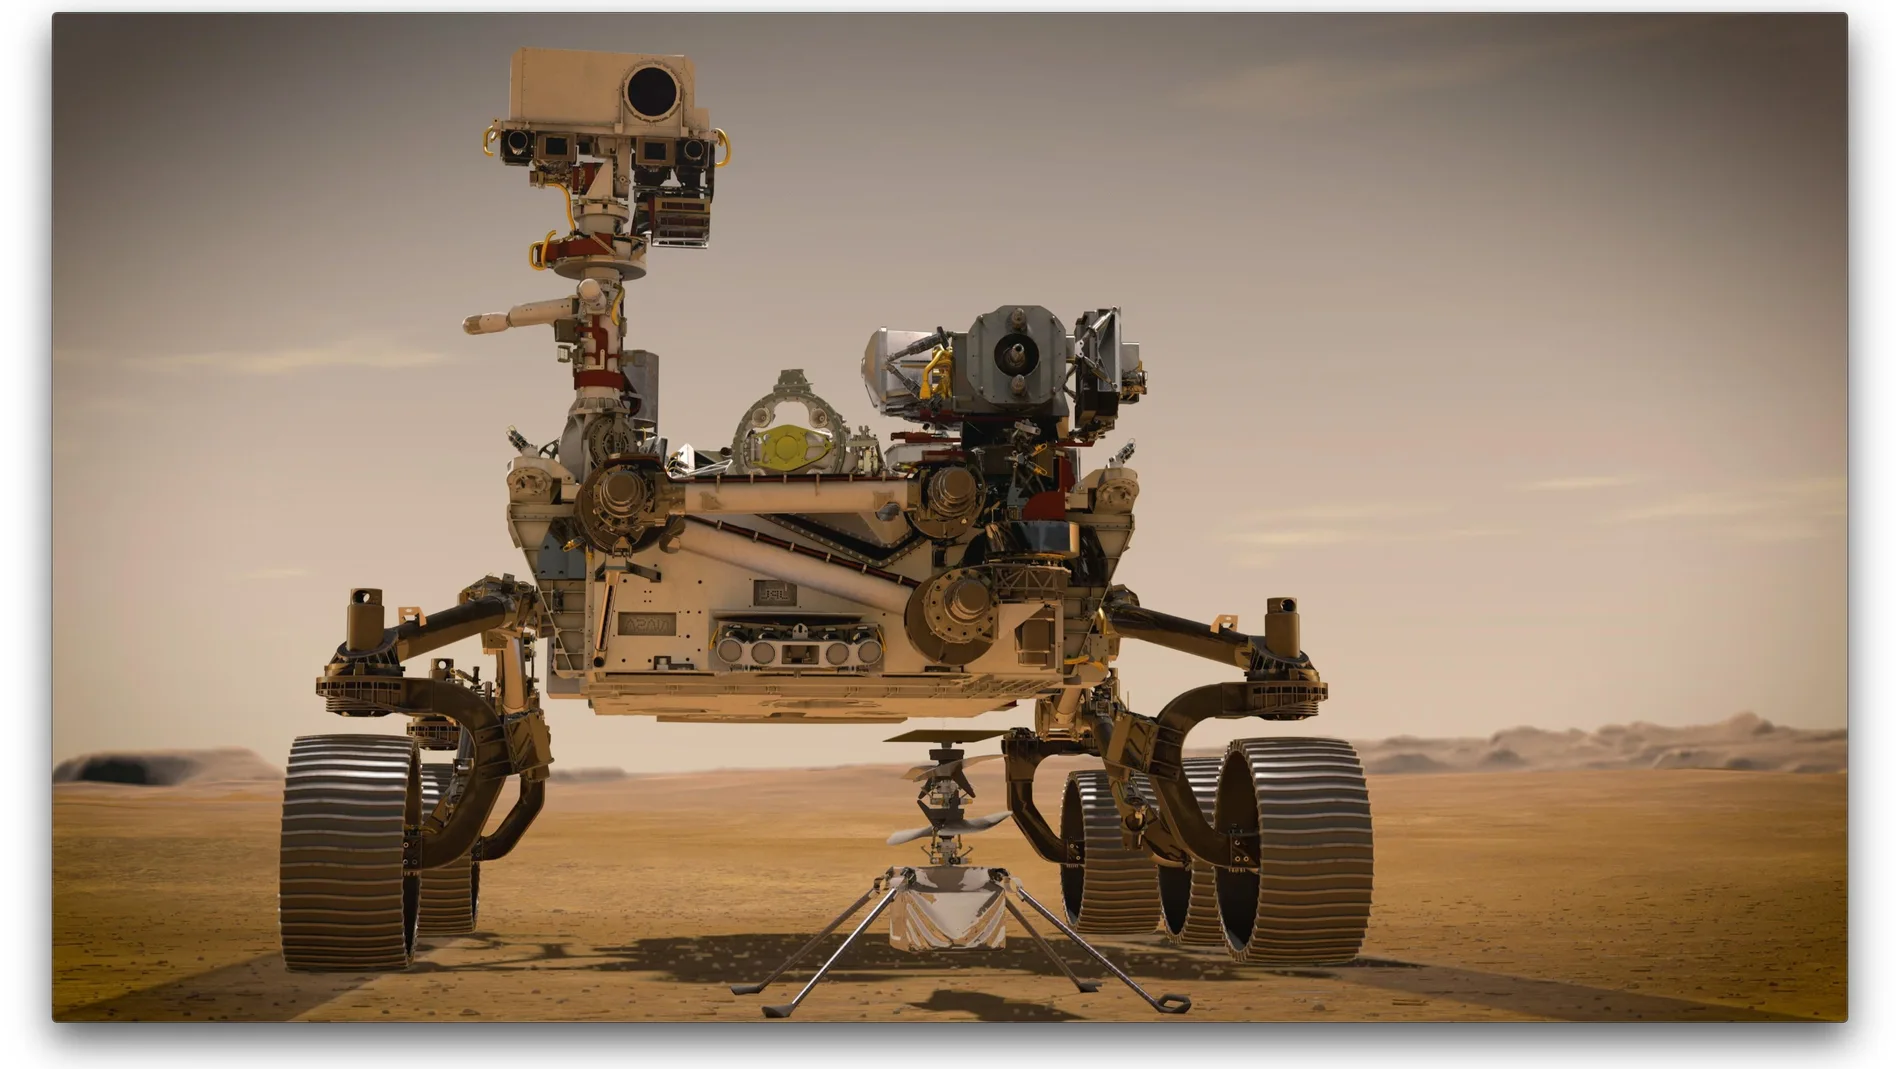 Dibujo artístico donde se muestra al helicóptero "Ingenuity" (adelante) que estará acoplado al nuevo vehículo espacial Rover (atrás), también conocido como "Perseverance" que serán los dos nuevos exploradores de la agencia en Marte.